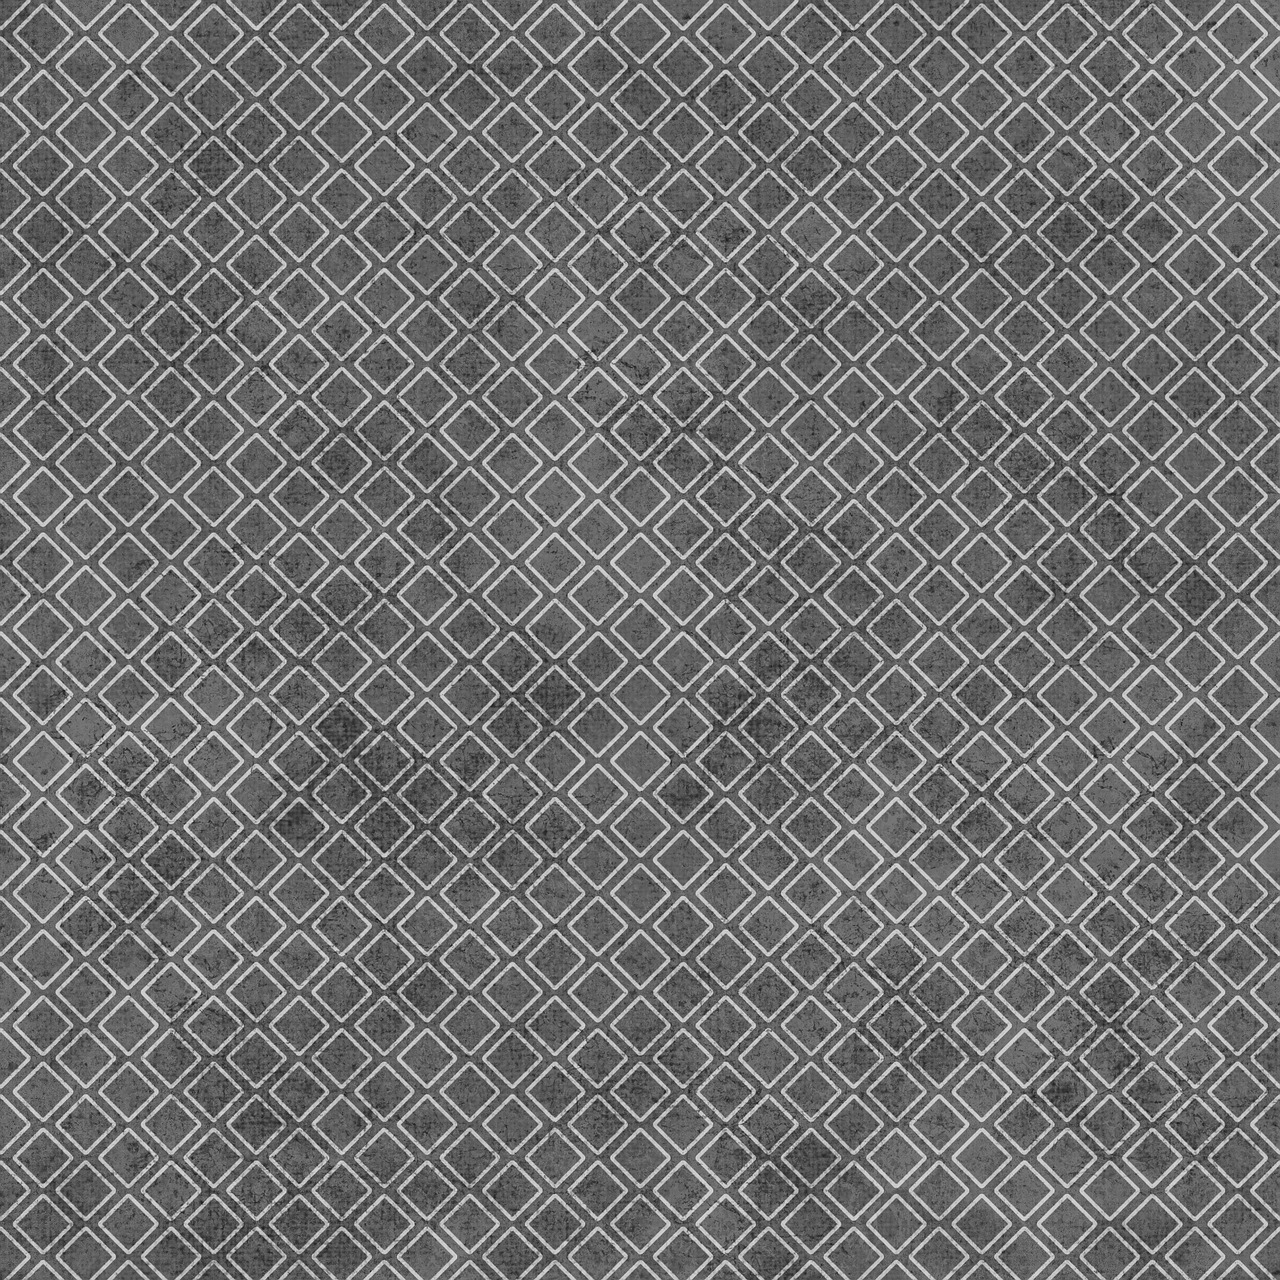 gray diamond shapes free photo